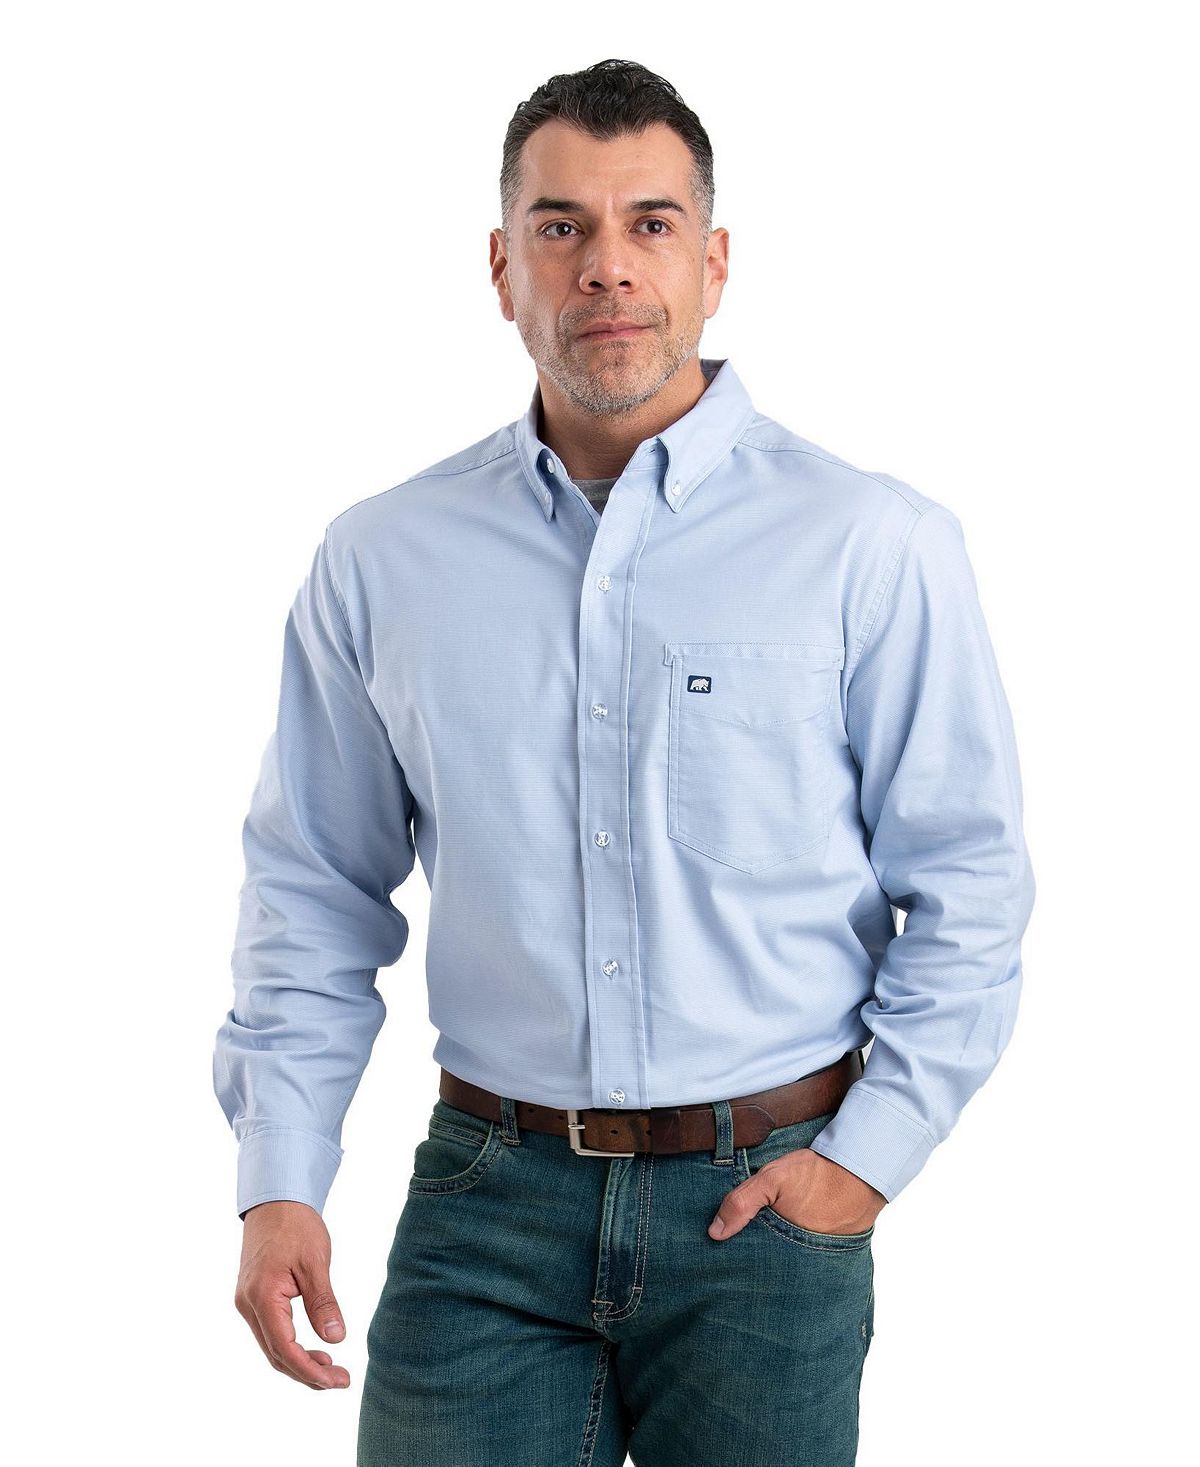 Мужская рубашка на пуговицах с длинным рукавом Foreman Flex Berne 2x 9005 светодиодные фары 6000k лампы для honda foreman 500 trx500fm 2005 2019 foreman 450 500 4x4 02 04 05 14